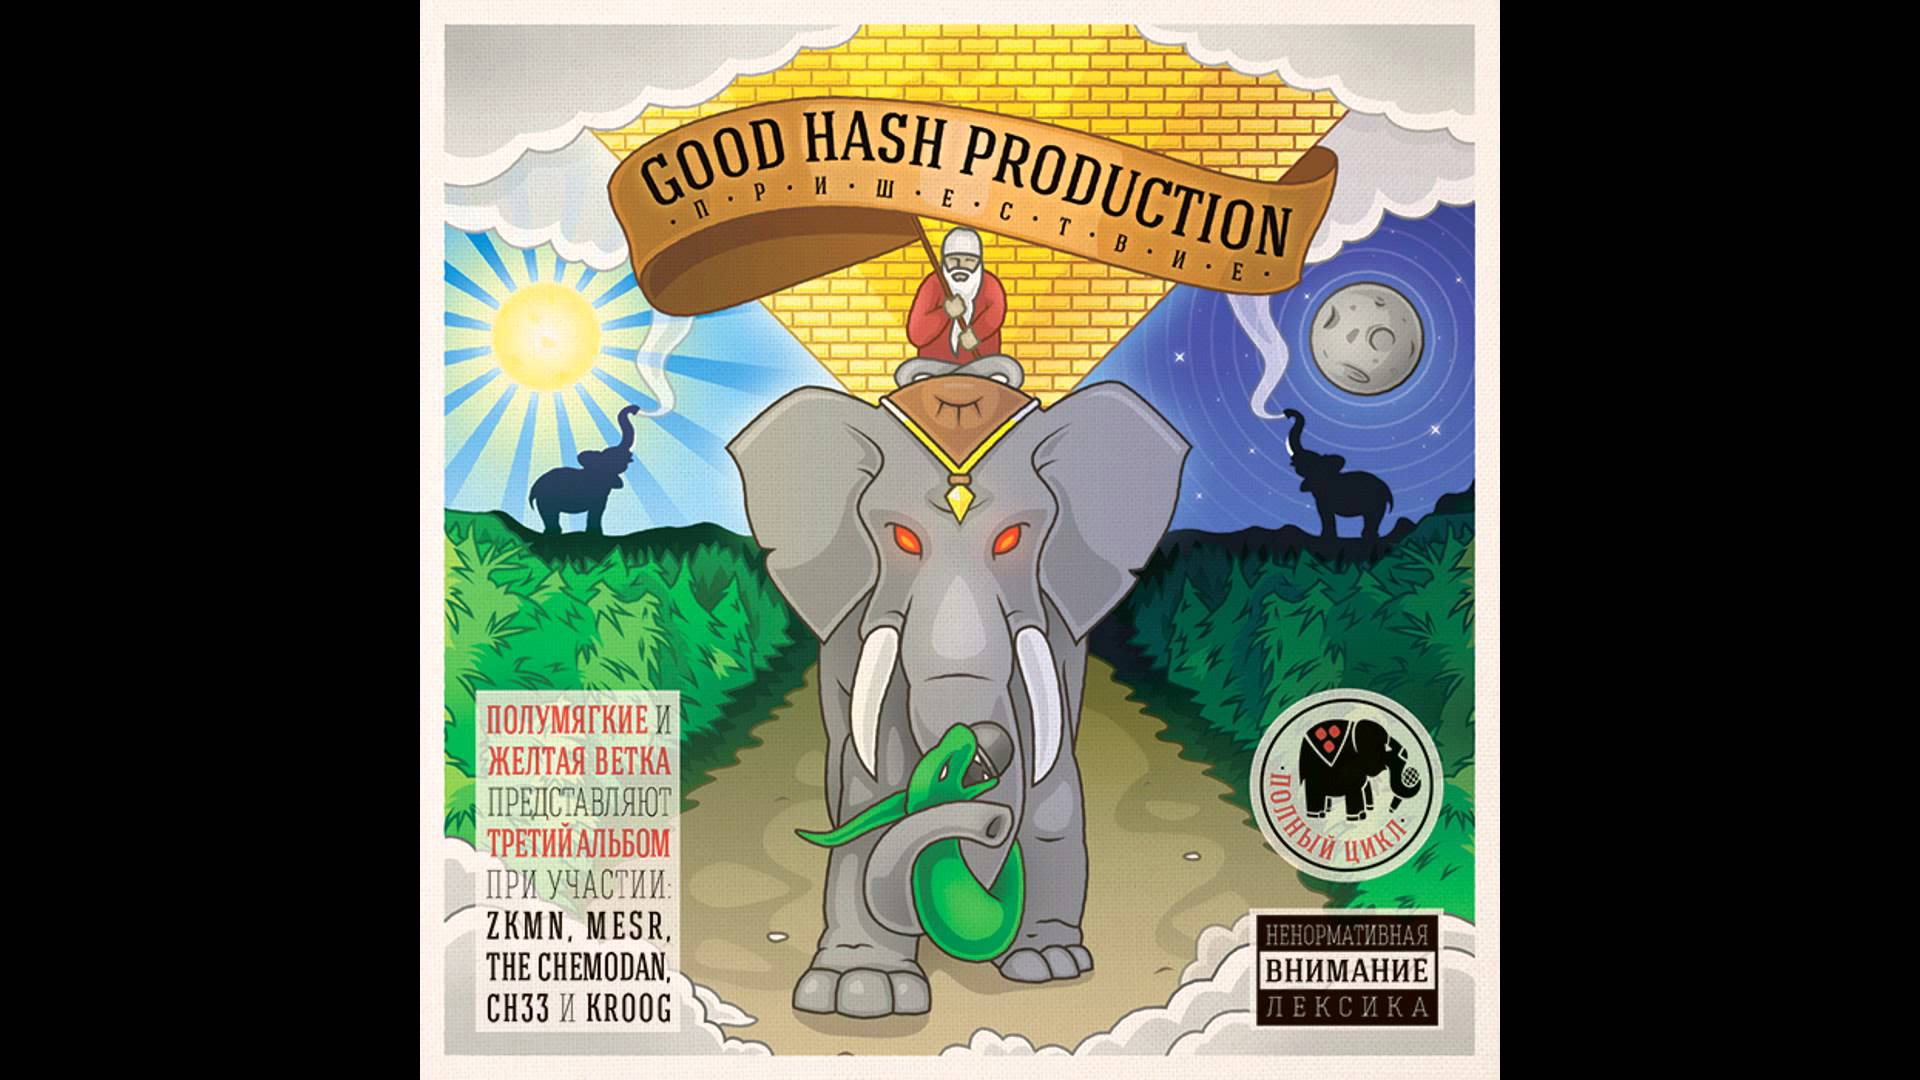 Good Hash Production Куплеты с золотои печатью - 3 feat CH33